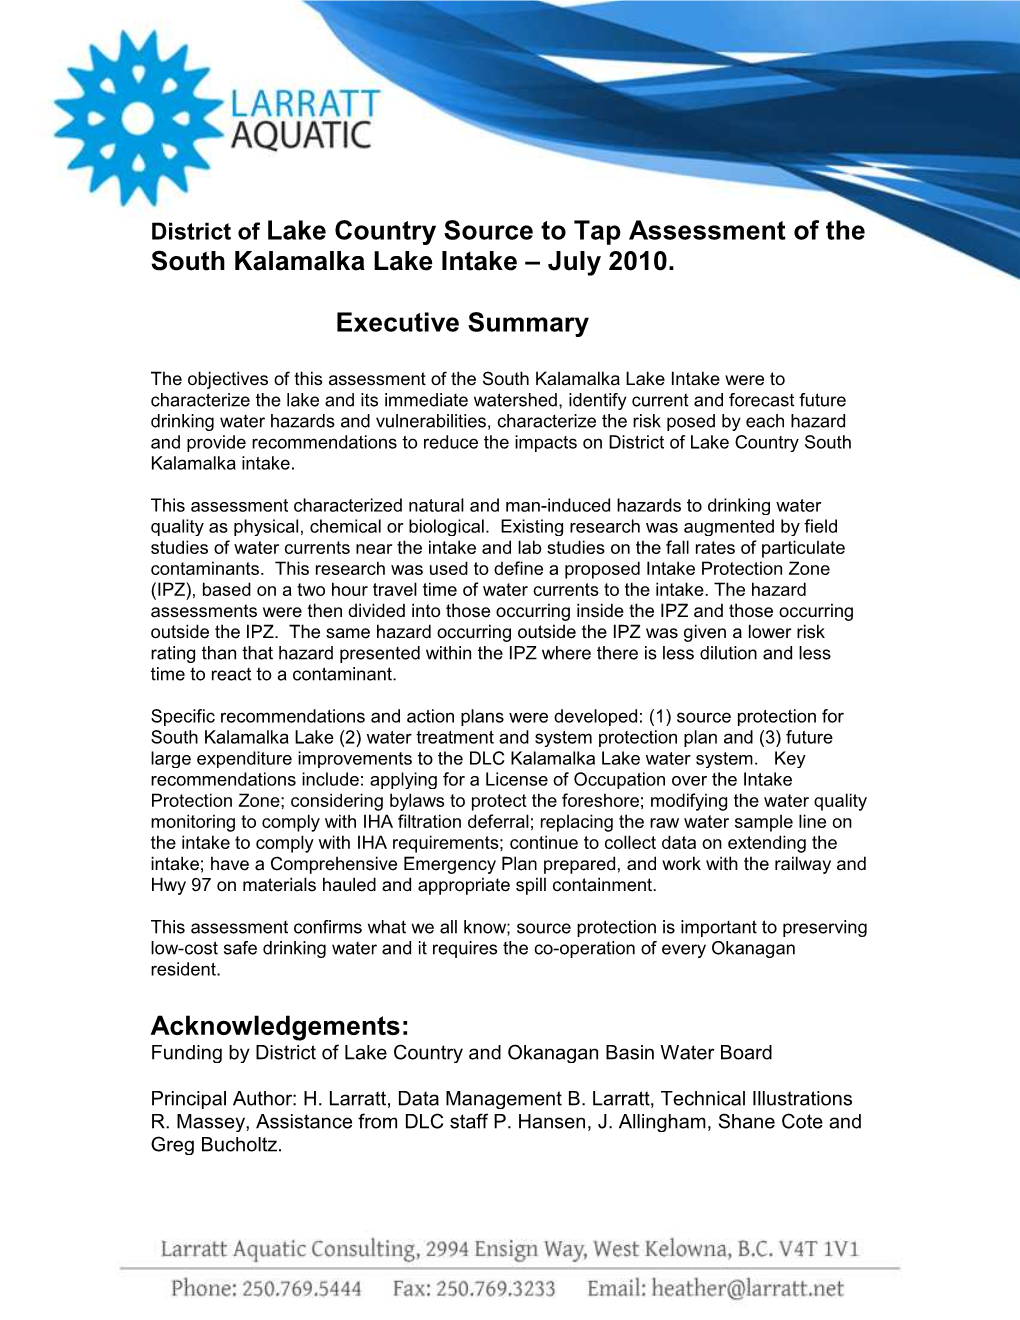 Source to Tap Assessment of South Kalamalka Lake Intake